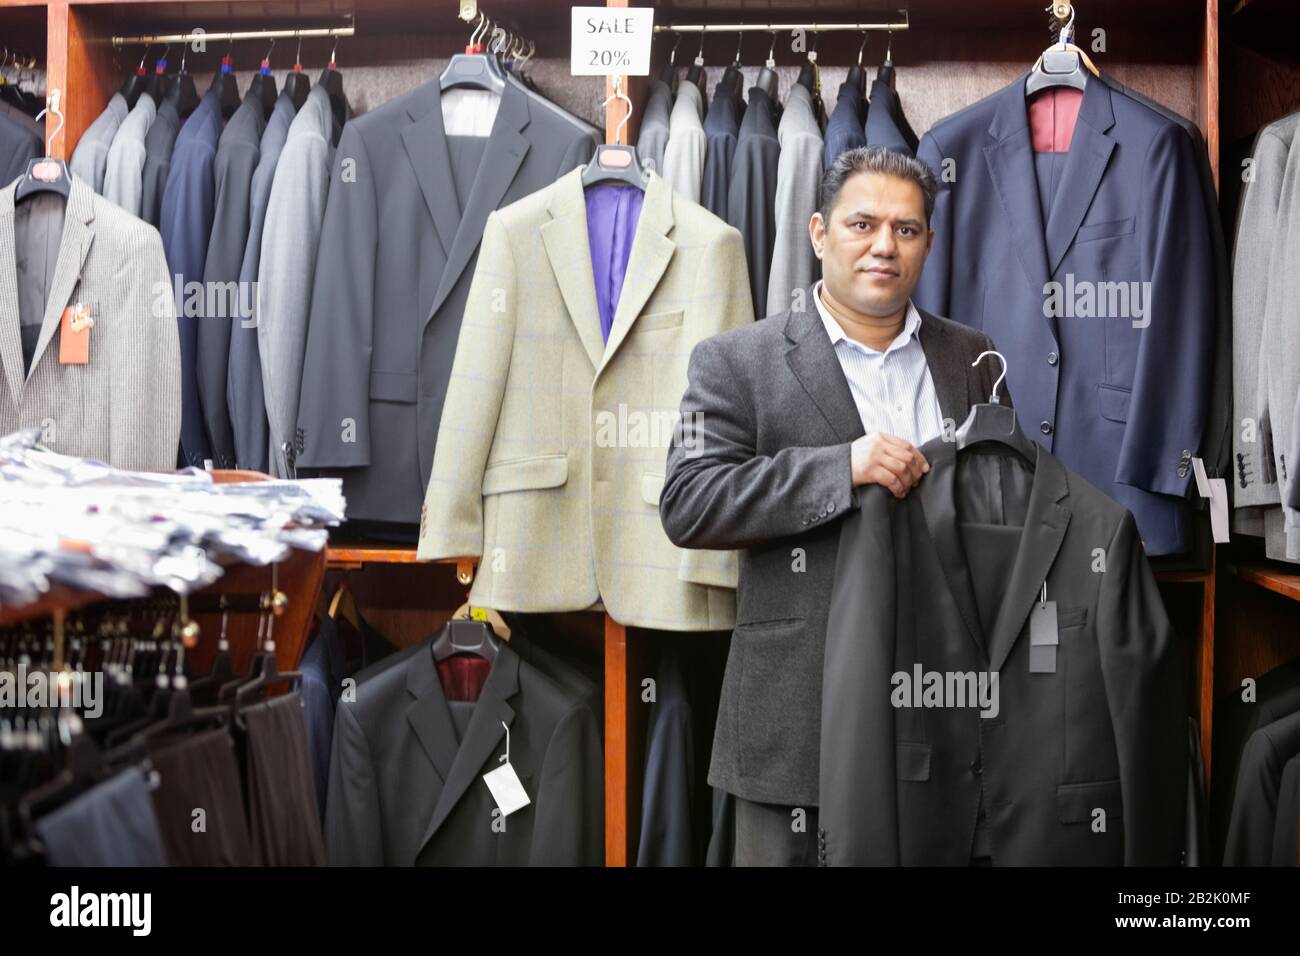 Portrait de l'homme faisant du shopping pour un manteau formel dans un magasin de vêtements pour hommes Banque D'Images